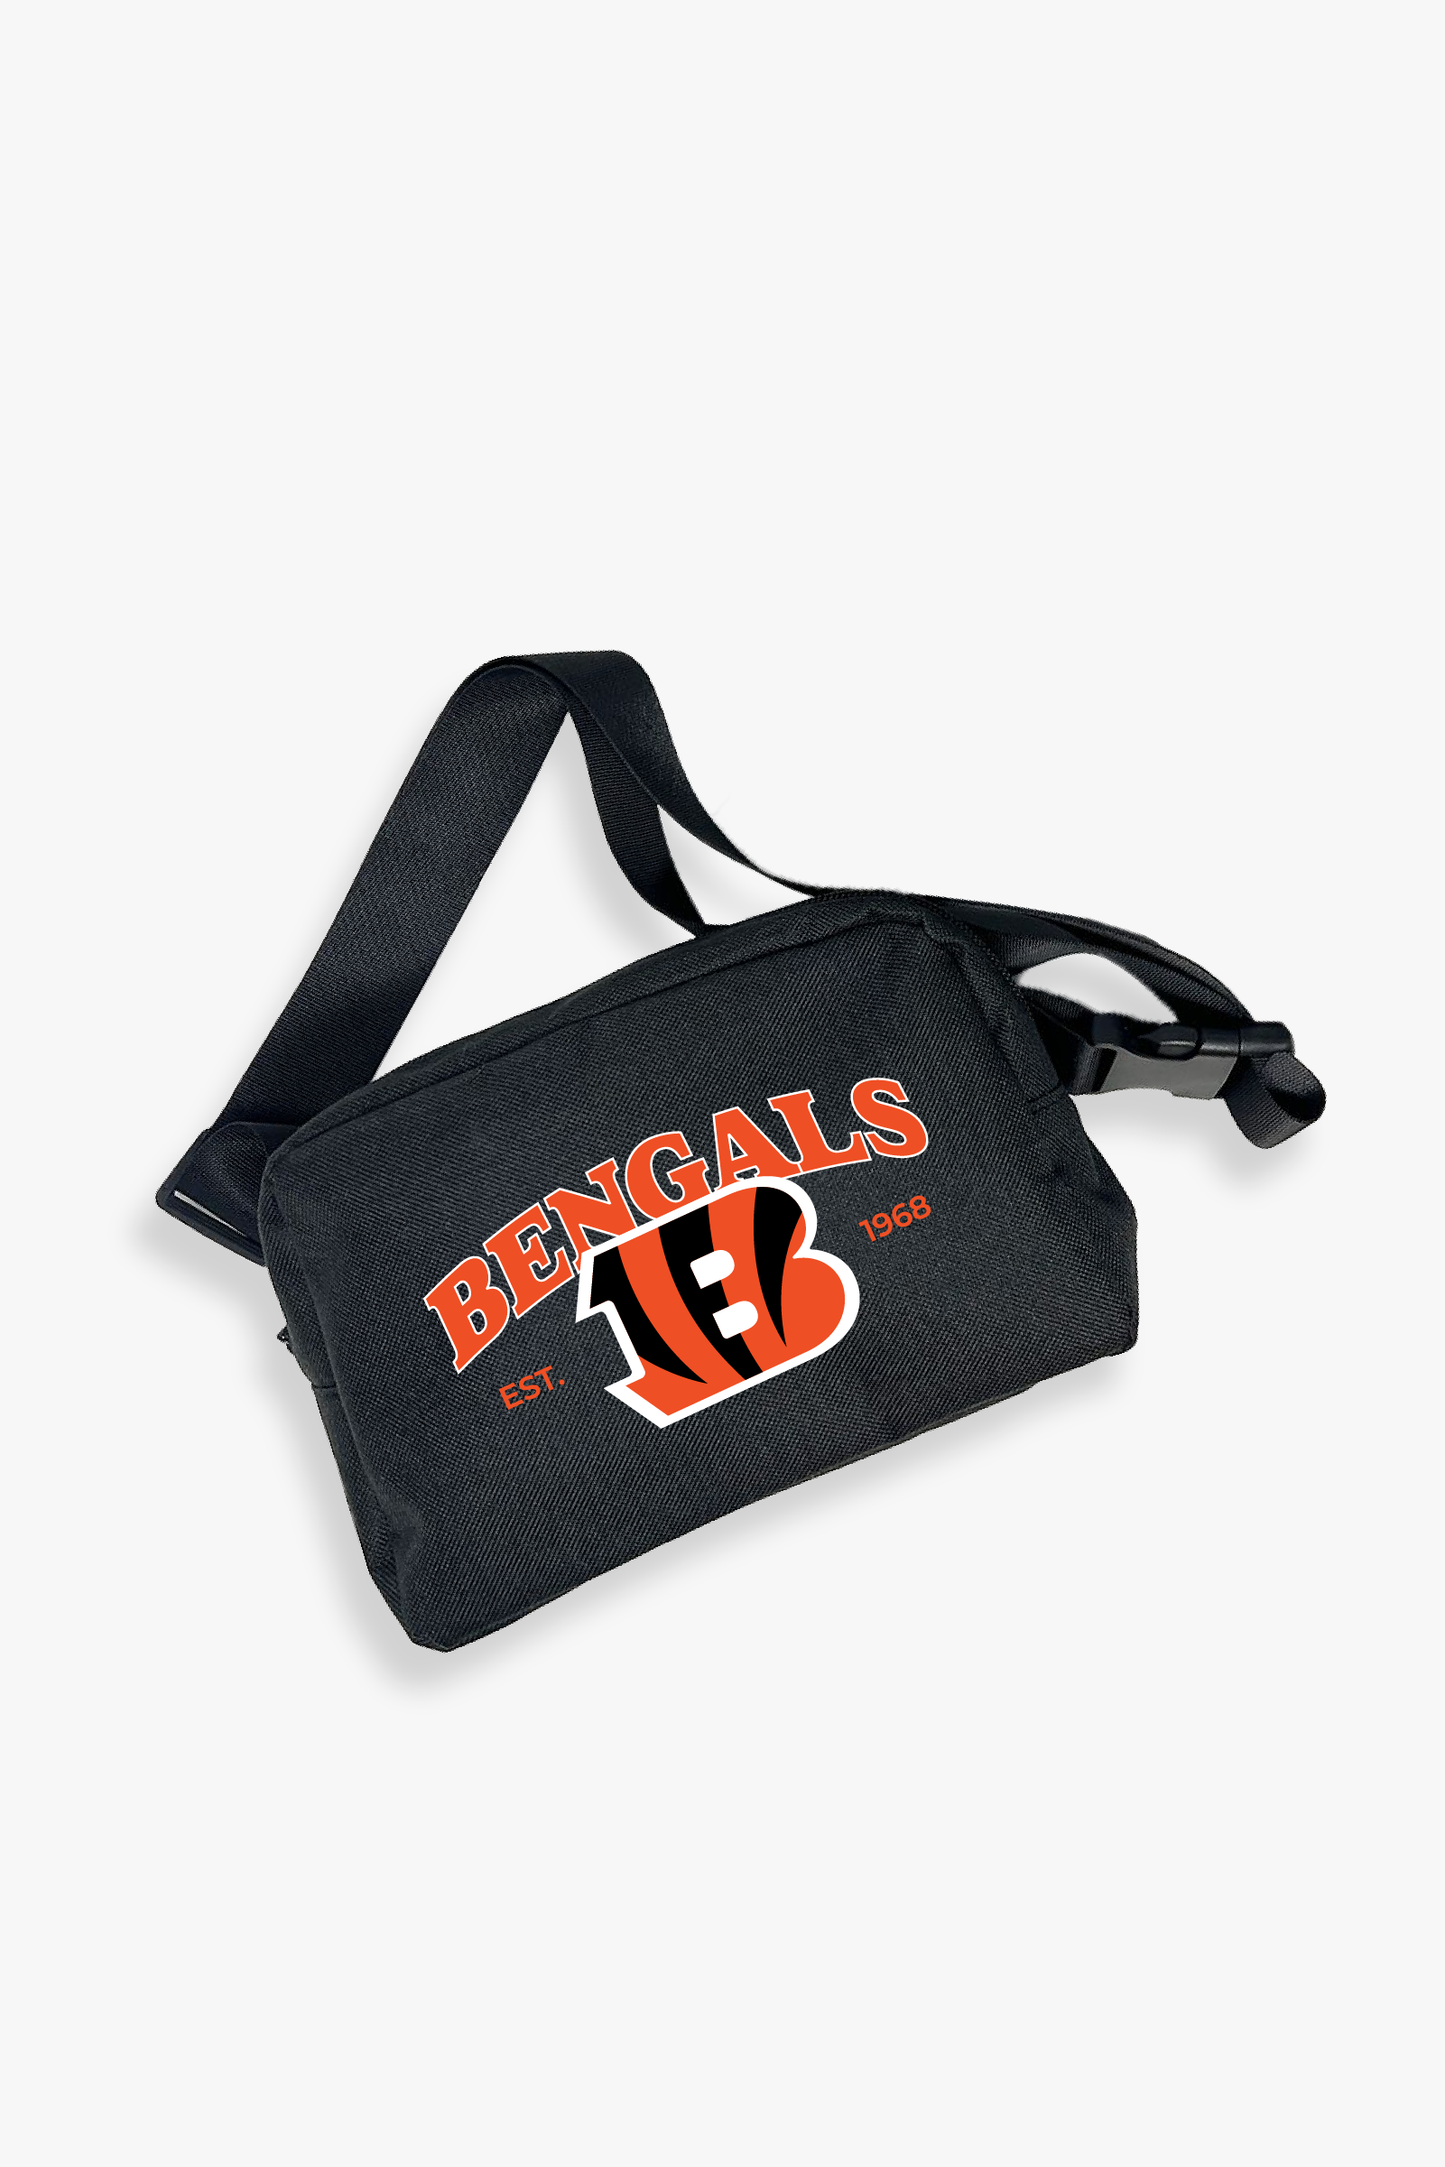 NFL Cincinnati Bengals Belt Bag